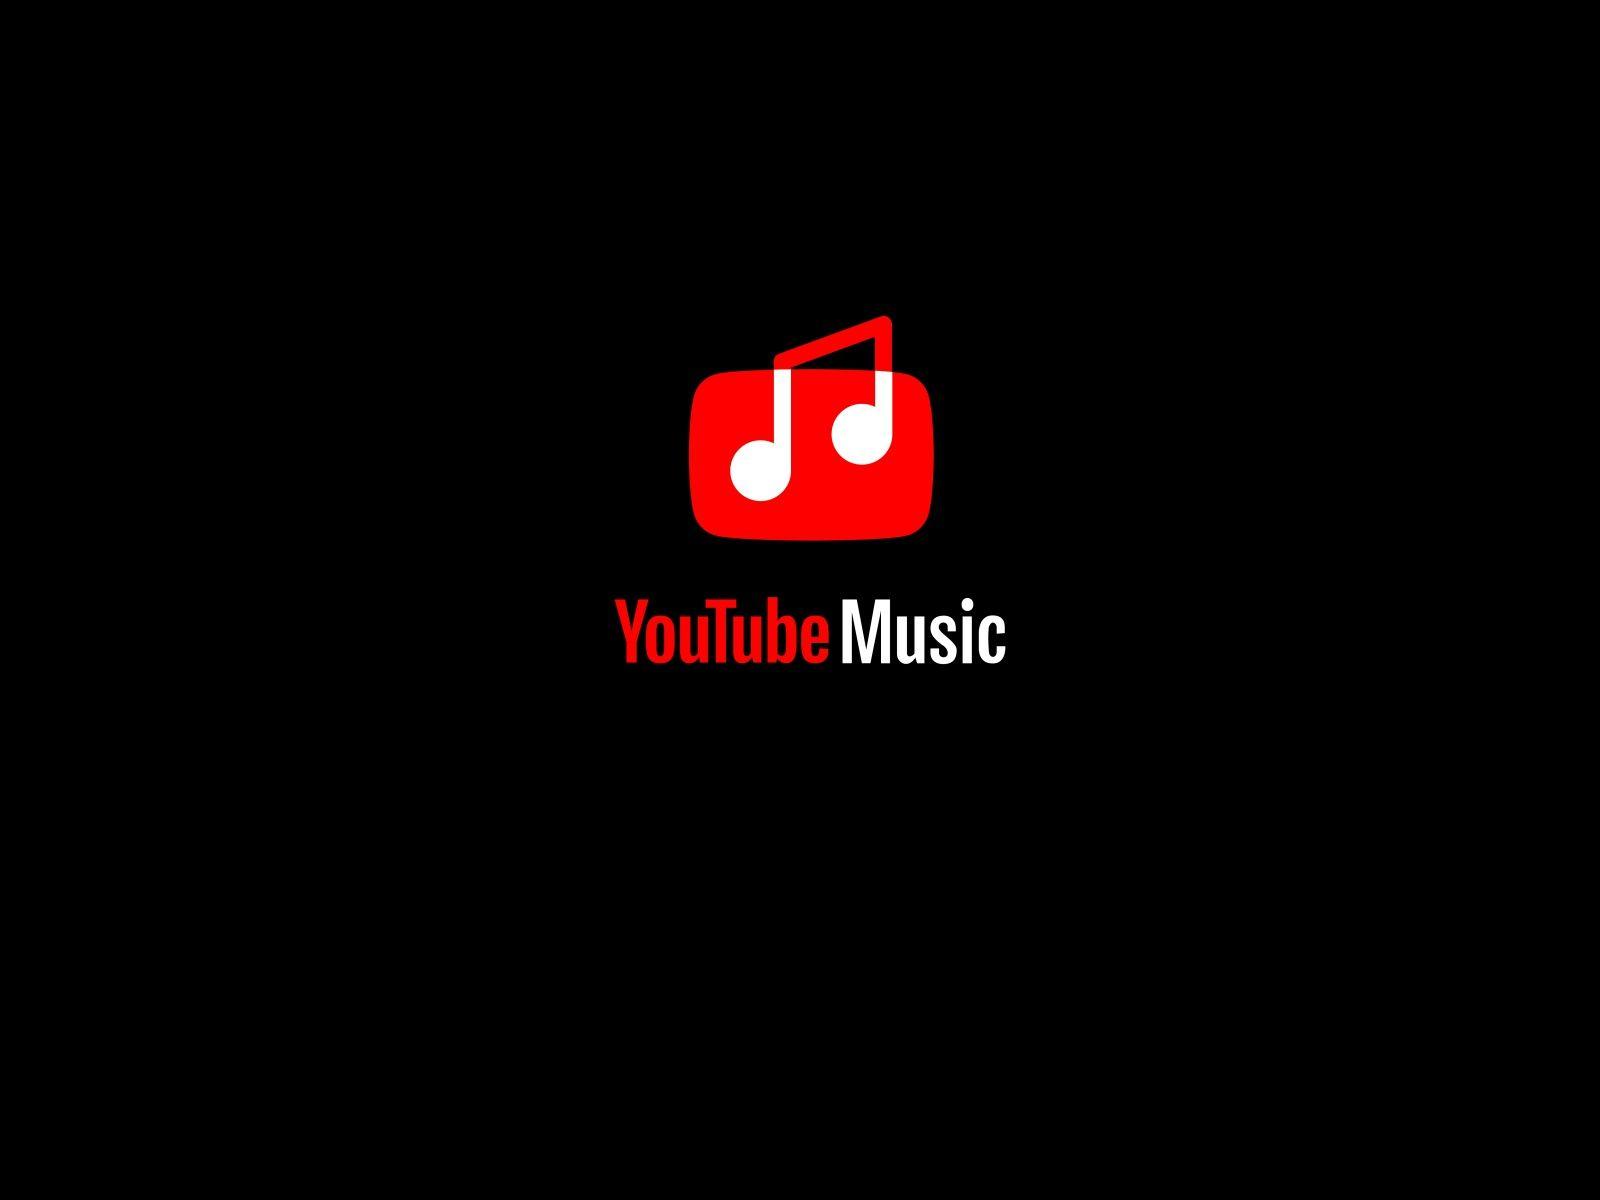 Музыка yt music. Youtube Music логотип. Youtube Мьюзик. Ютуб музыка логотип. Youtube Music картинки.